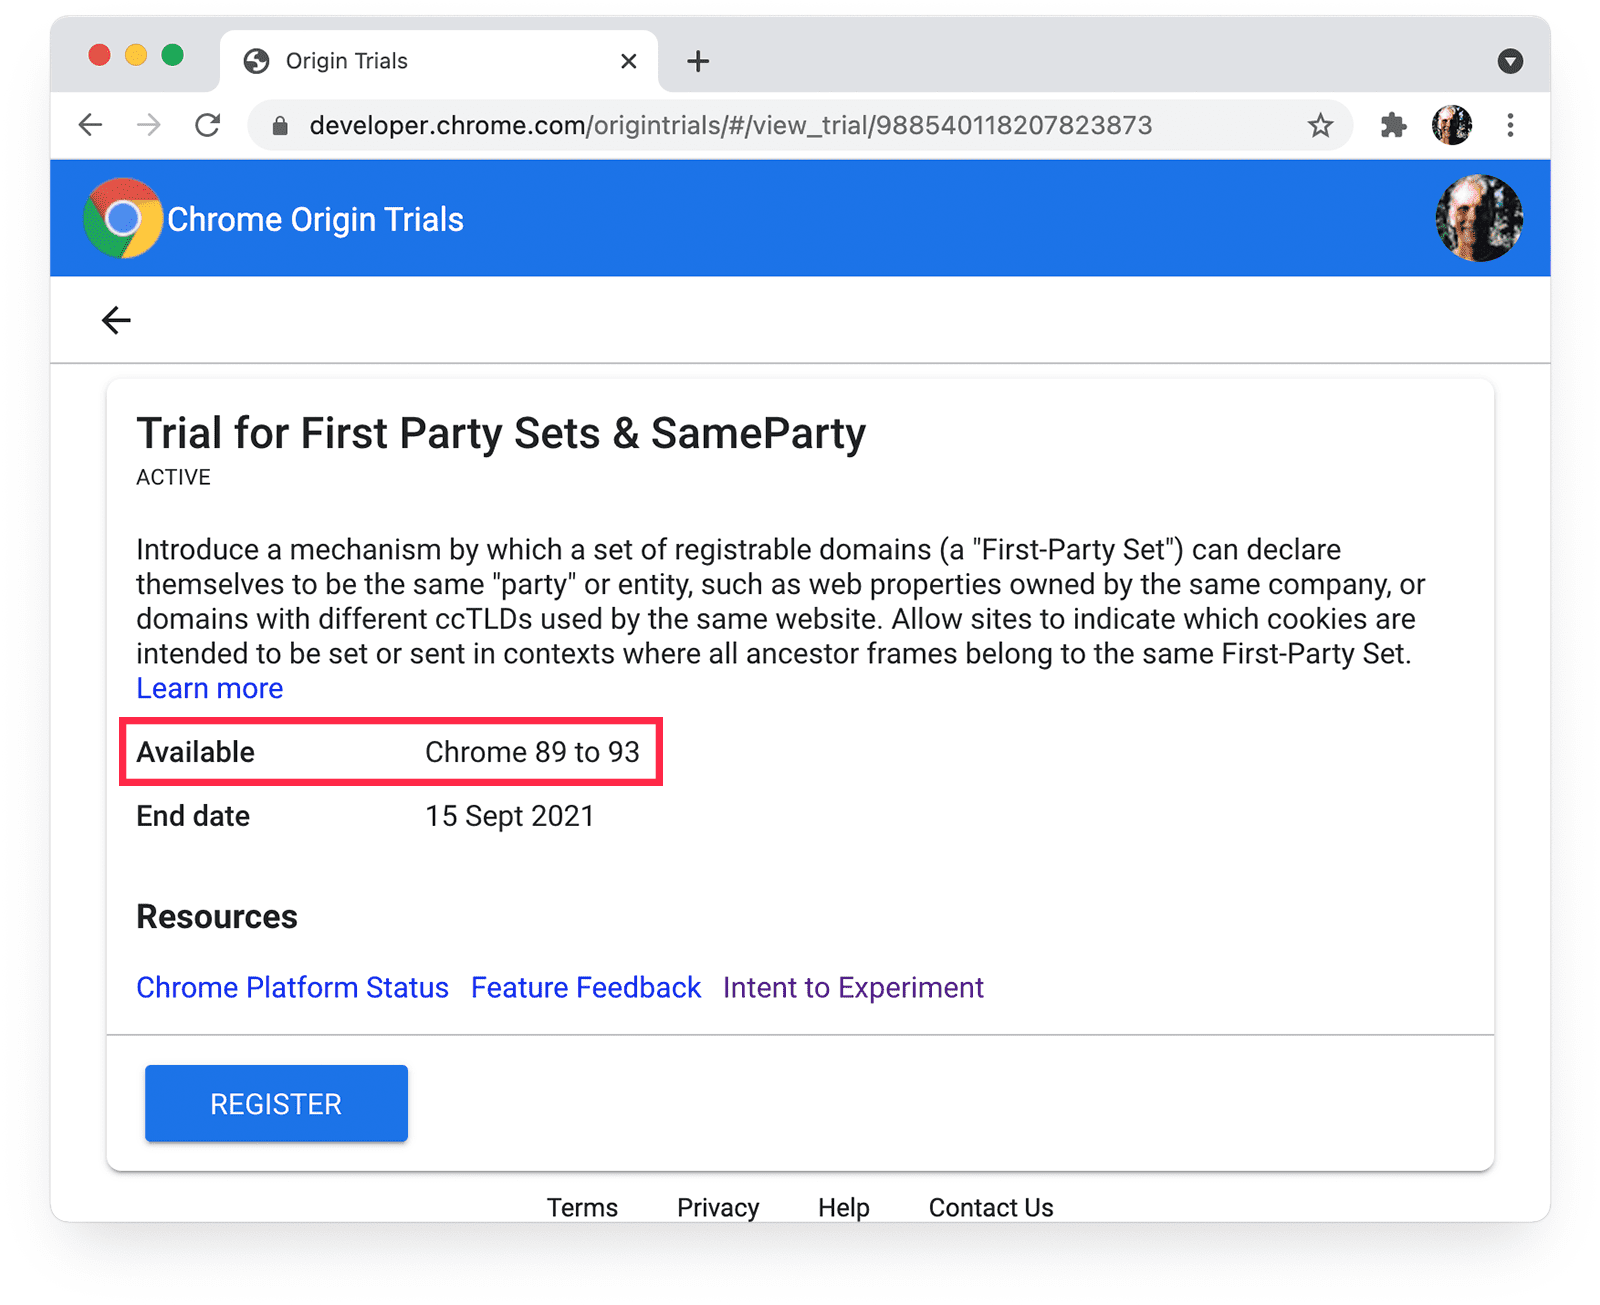 صفحة الإصدارات التجريبية من Chrome Origin
لكل من مجموعات نطاقات الطرف الأول وSameParty، مع تمييز مدى توفُّر Chrome